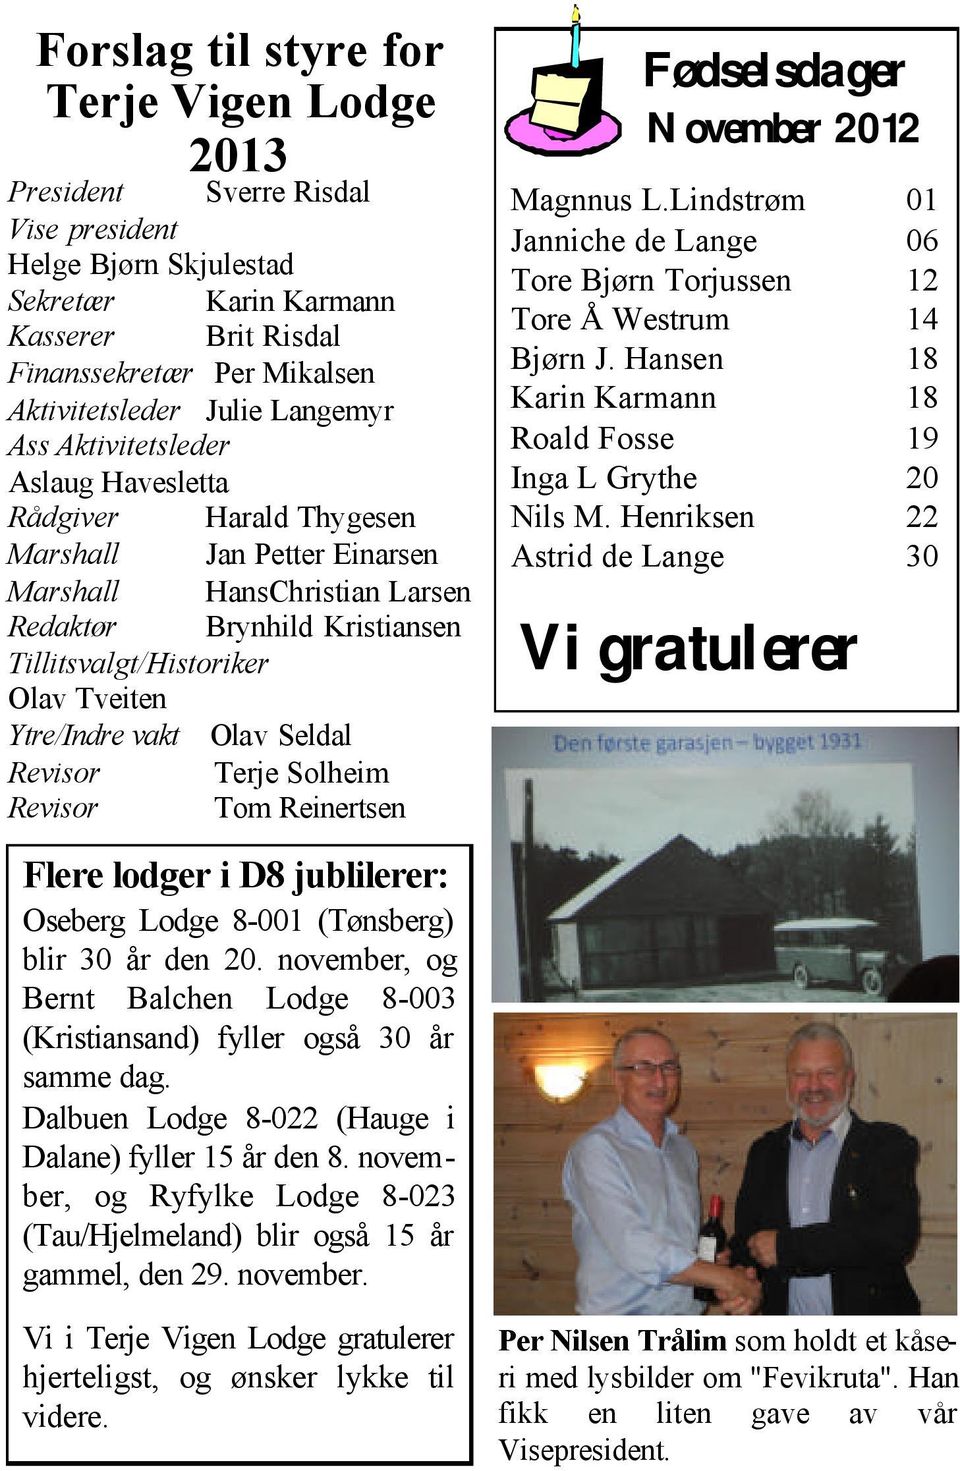 Tveiten Ytre/Indre vakt Olav Seldal Revisor Terje Solheim Revisor Tom Reinertsen Flere lodger i D8 jublilerer: Oseberg Lodge 8-001 (Tønsberg) blir 30 år den 20.